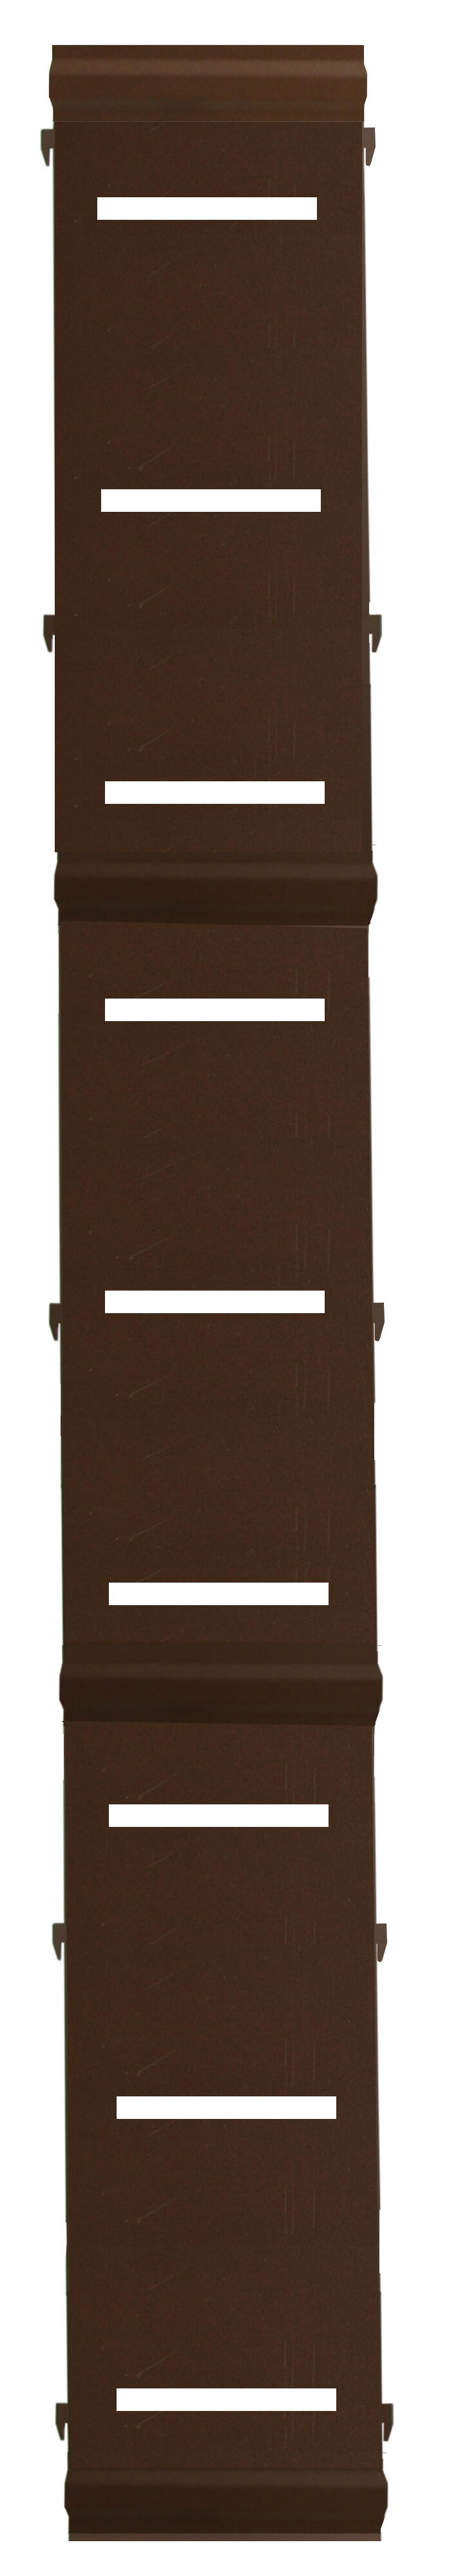 Panel remate valla acero galvanizado franja rayas marrón 194x24,5 cm